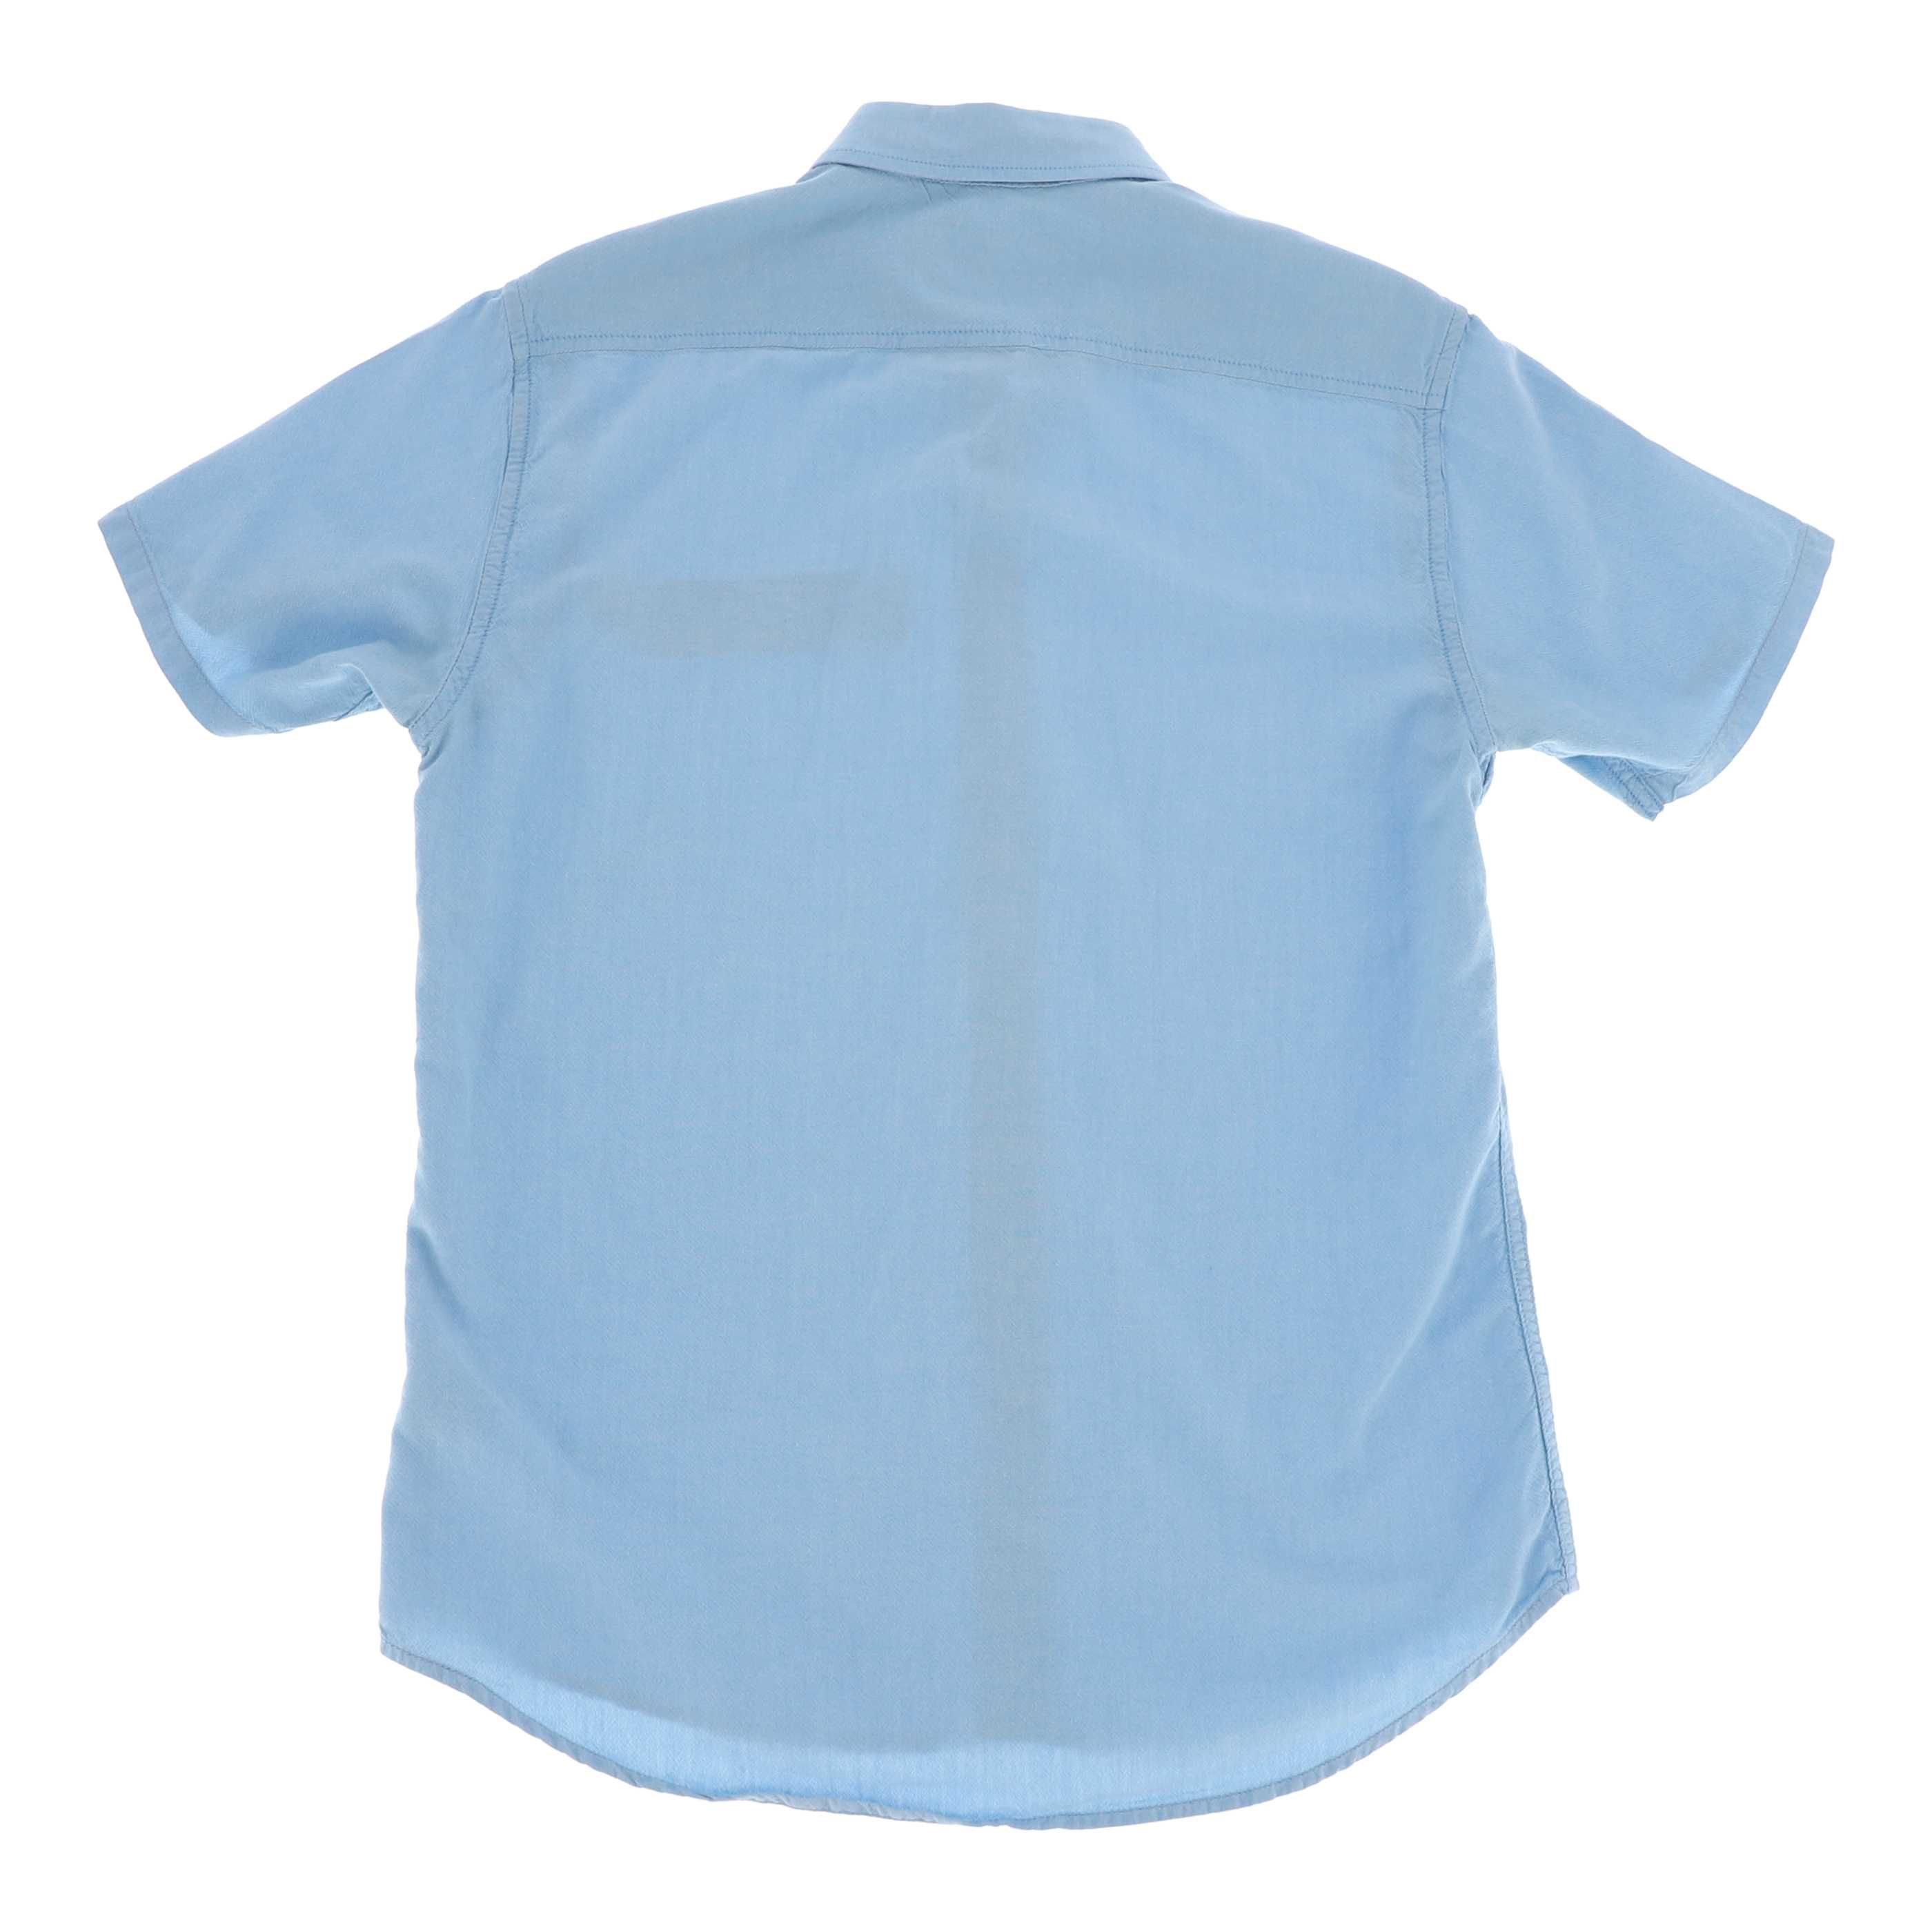 Niebieska koszula marki Diverse, rozmiar 40